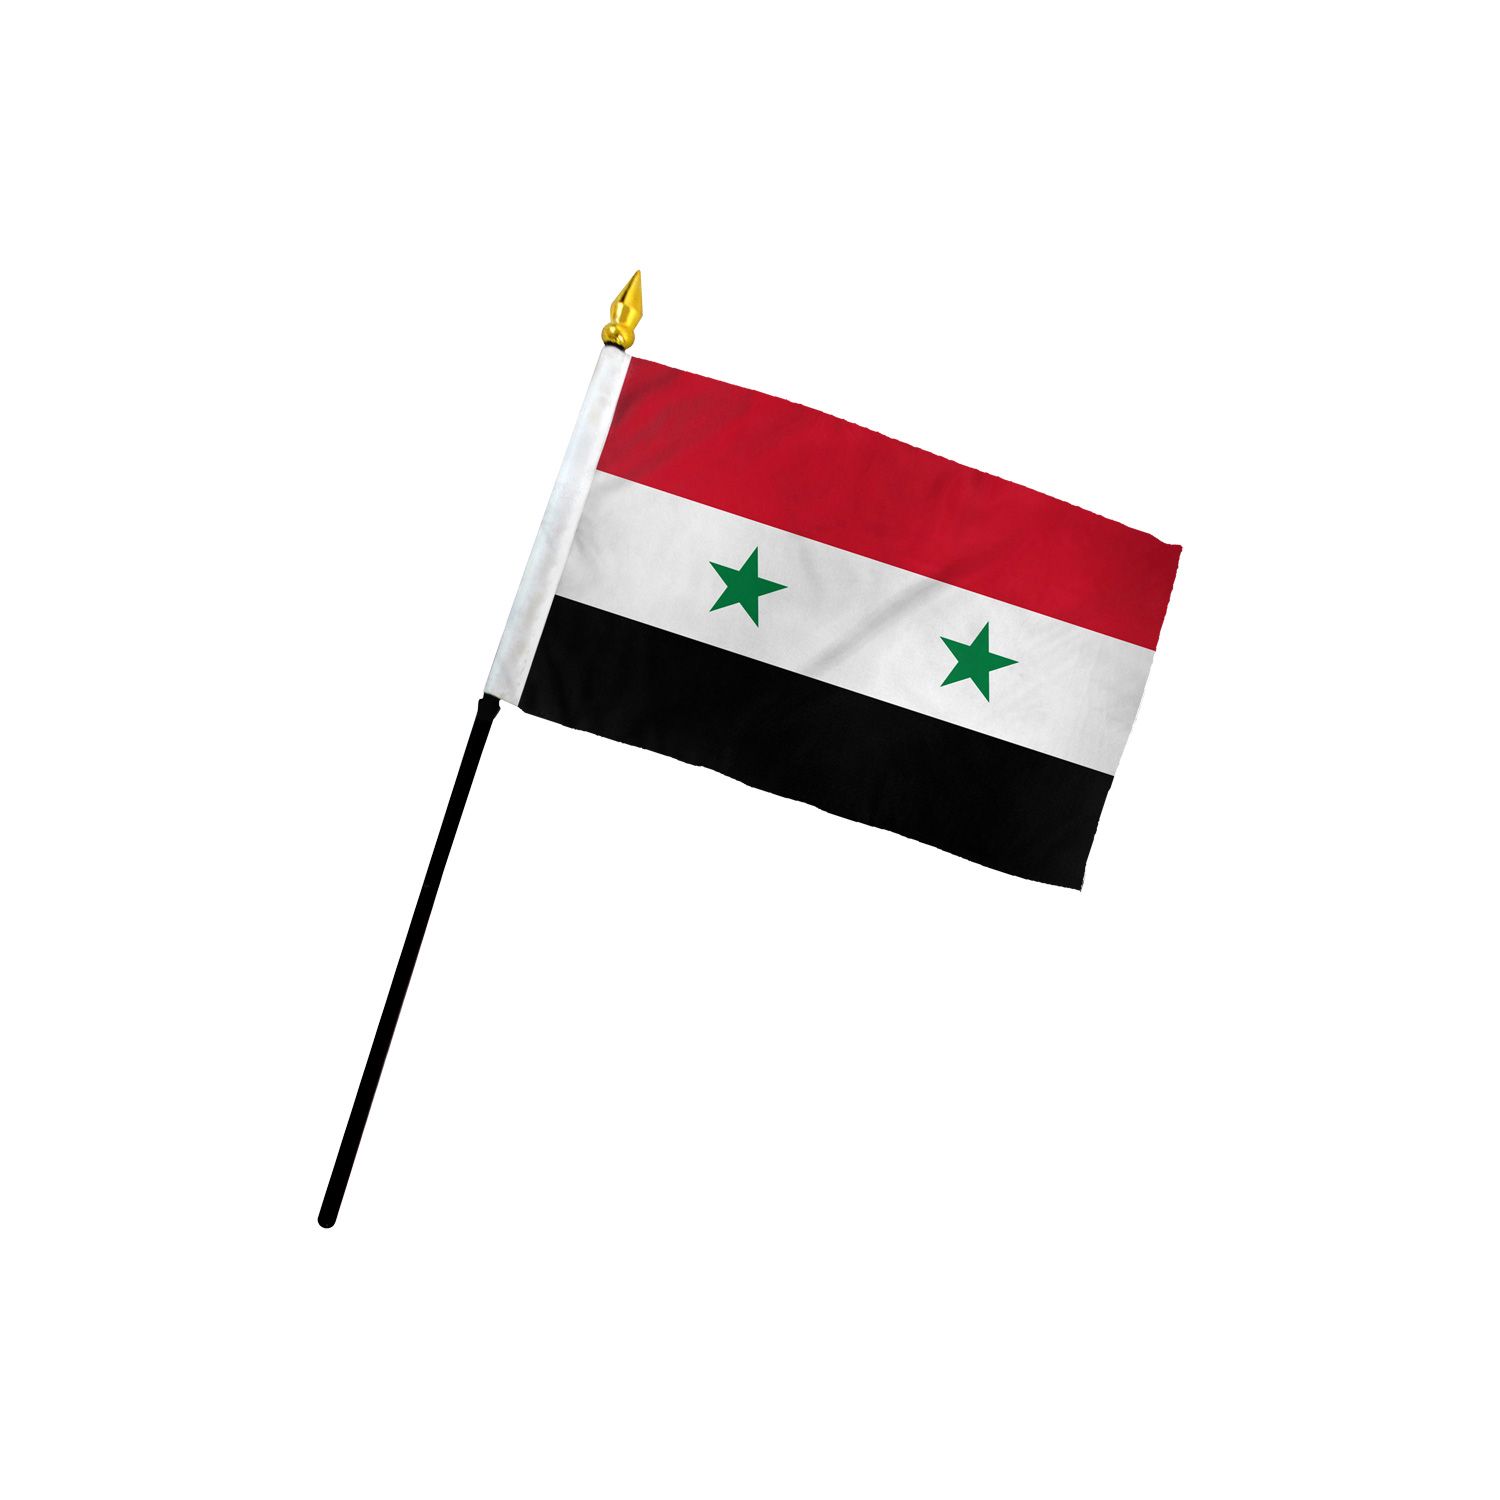 https://www.flagsimporter.com/media/catalog/product/cache/e49557cbac6d034a99c2e3dab85de3f4/d/f/df-syria.jpg